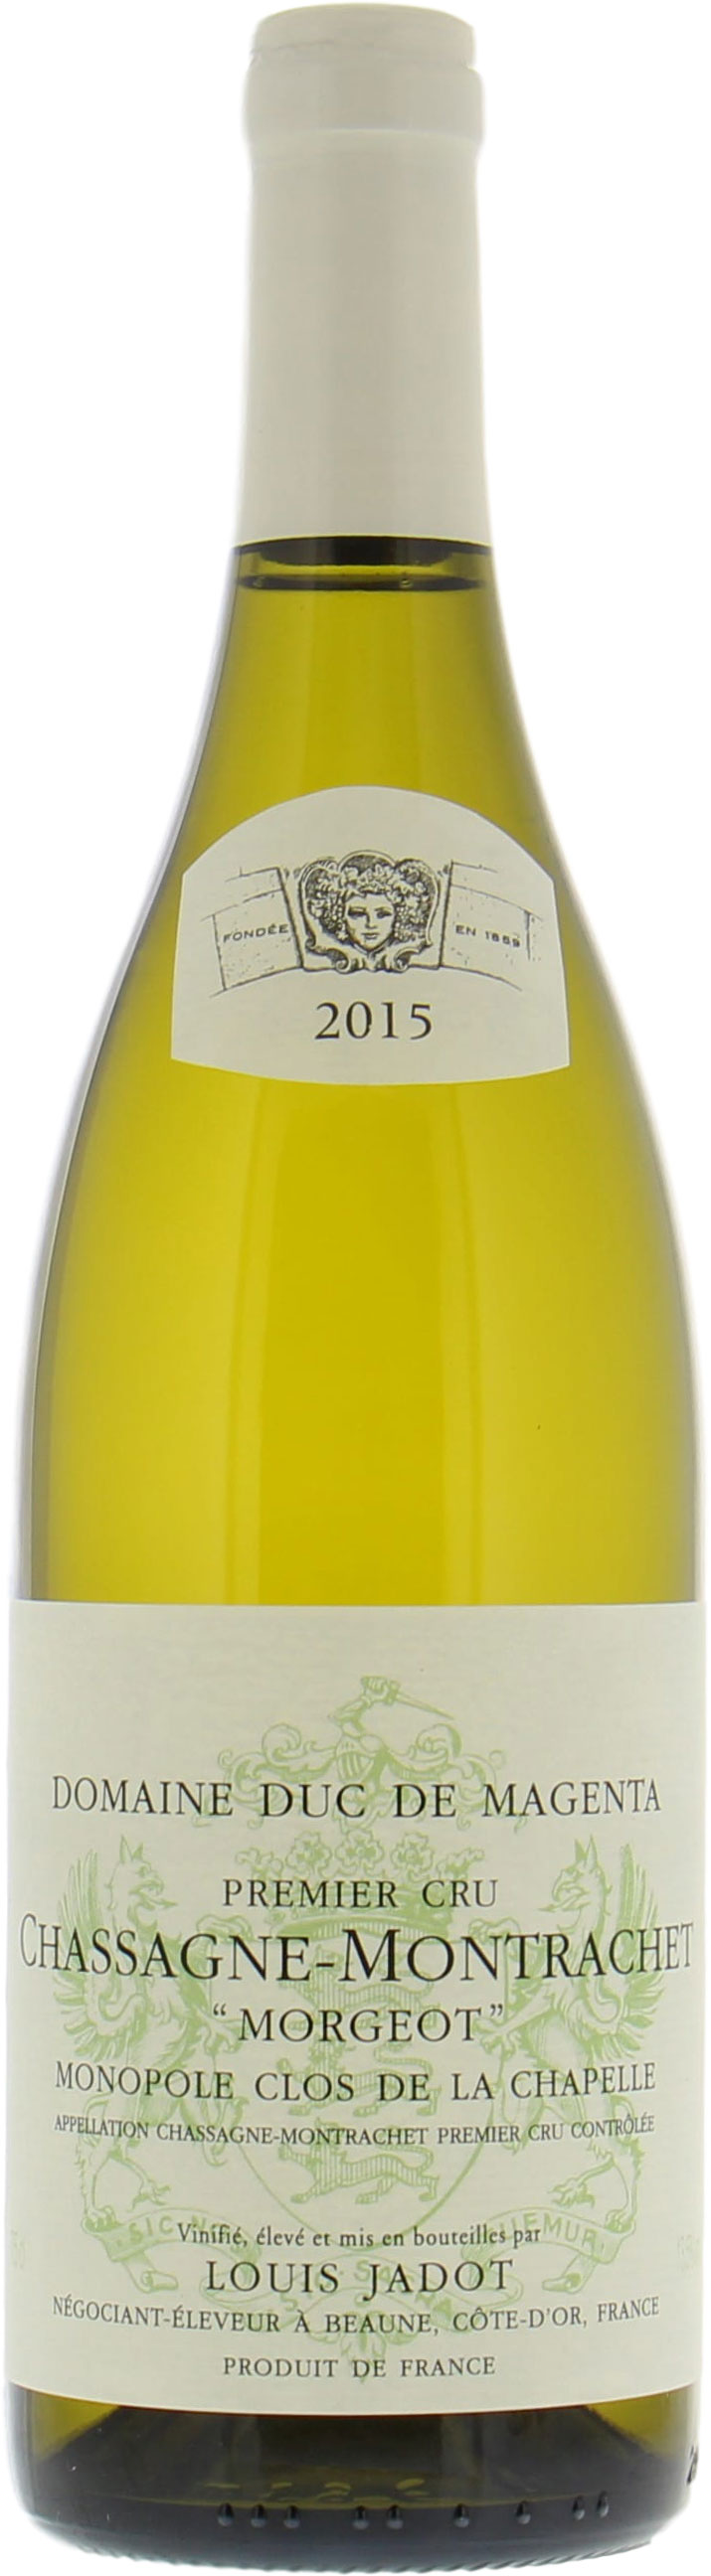 Jadot - Chassagne Montrachet Morgeot Clos de la Chapelle Blanc 2015 Perfect